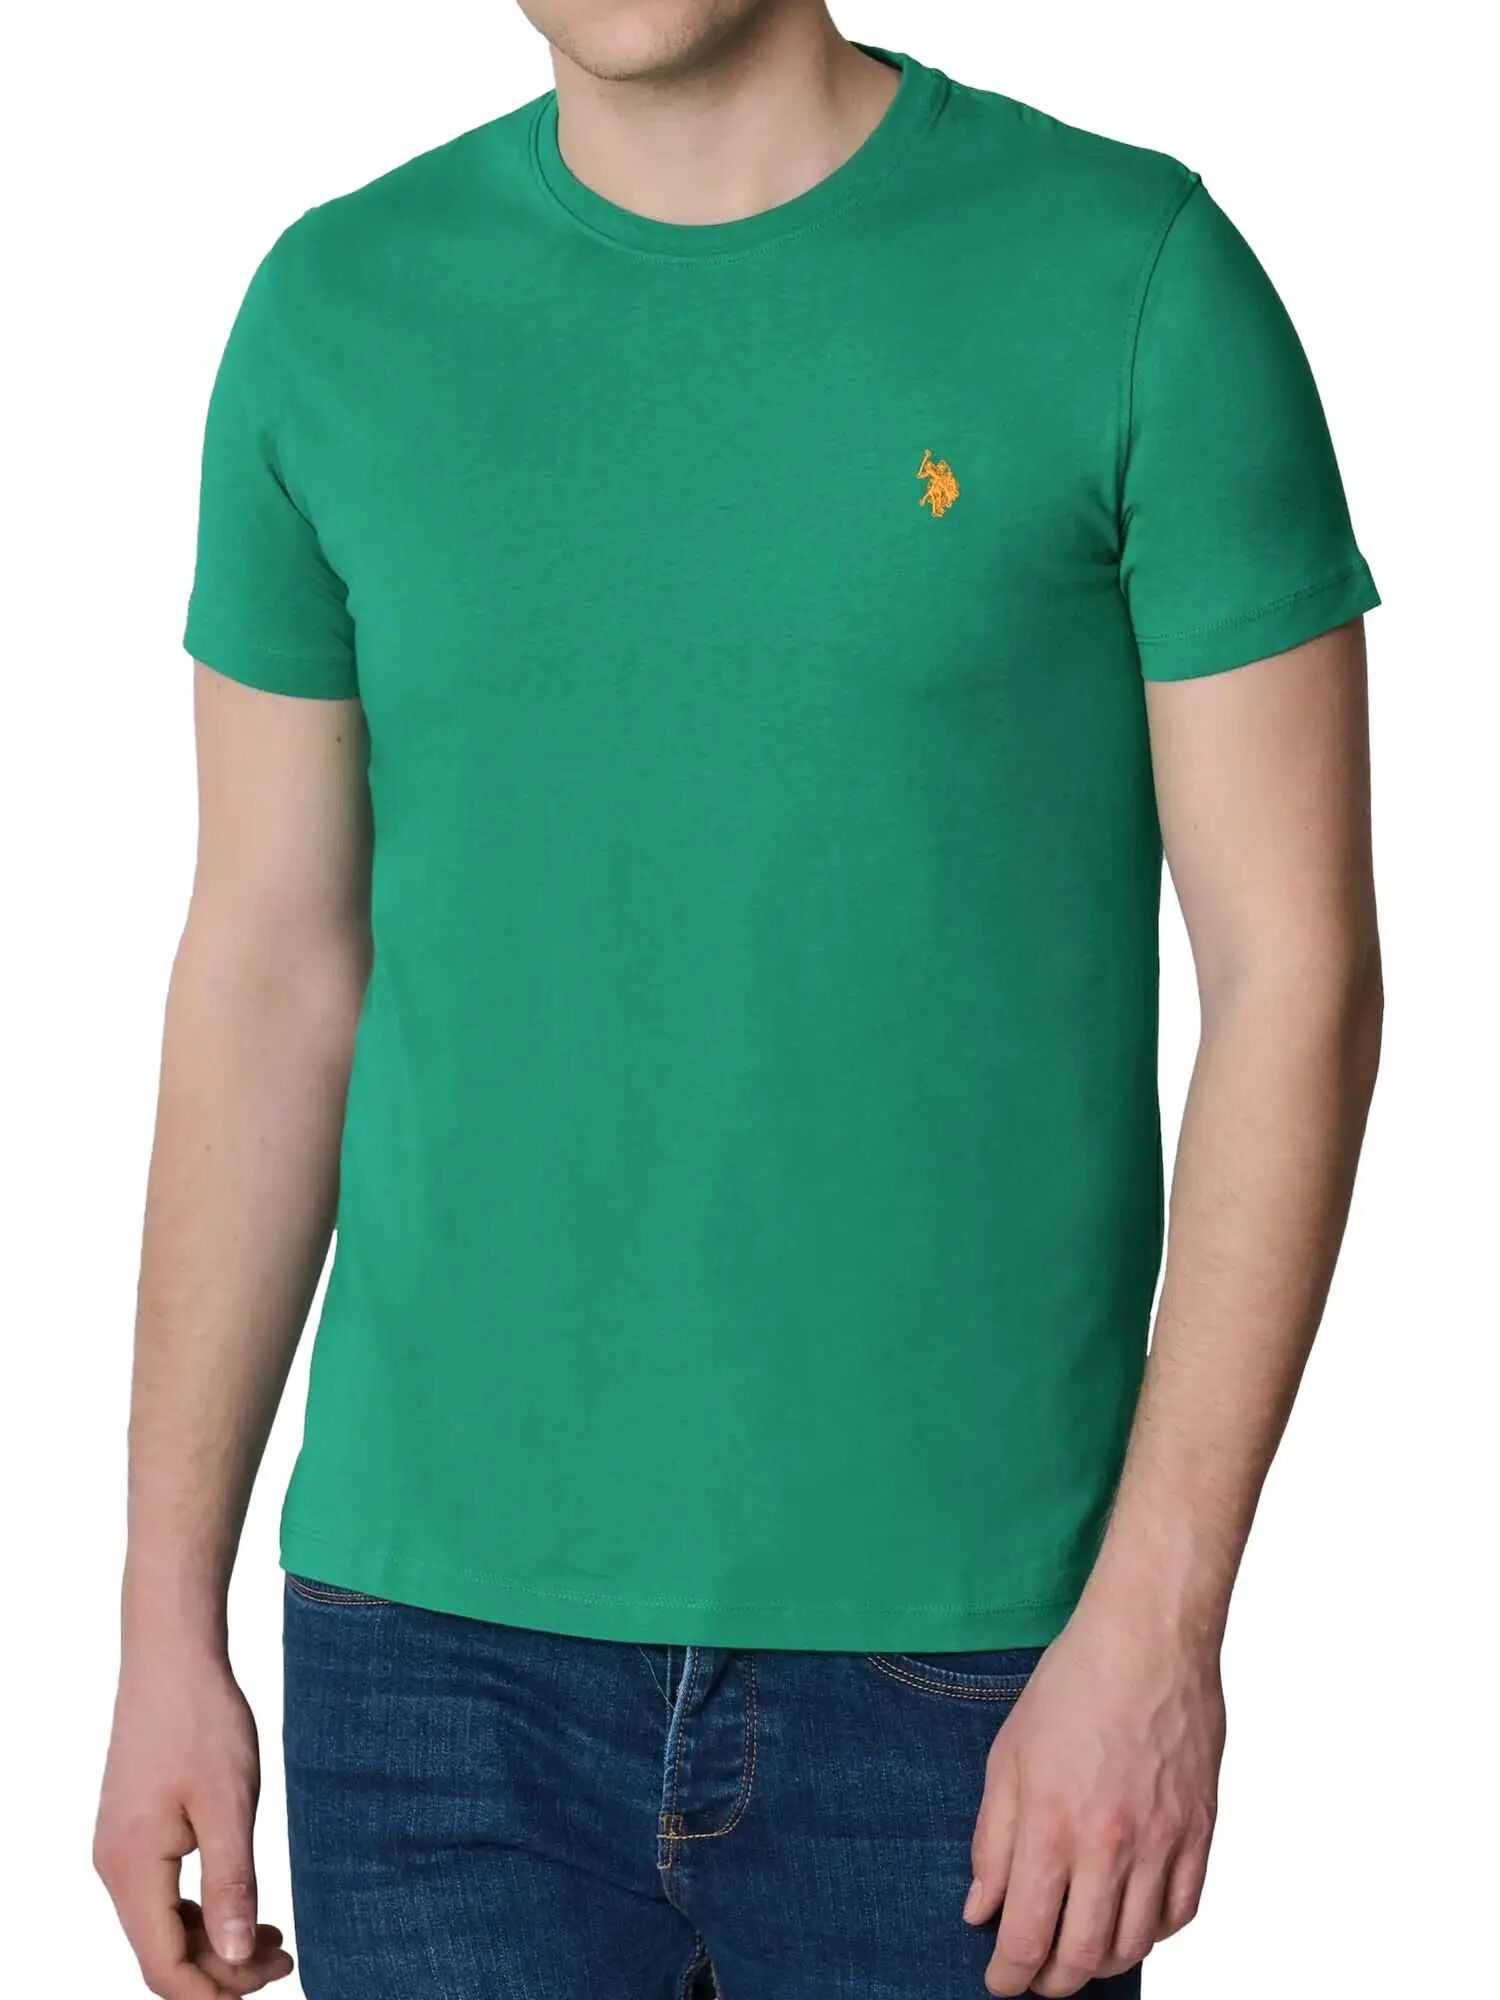 Us Polo Assn. T-shirt Uomo Colore Verde VERDE S